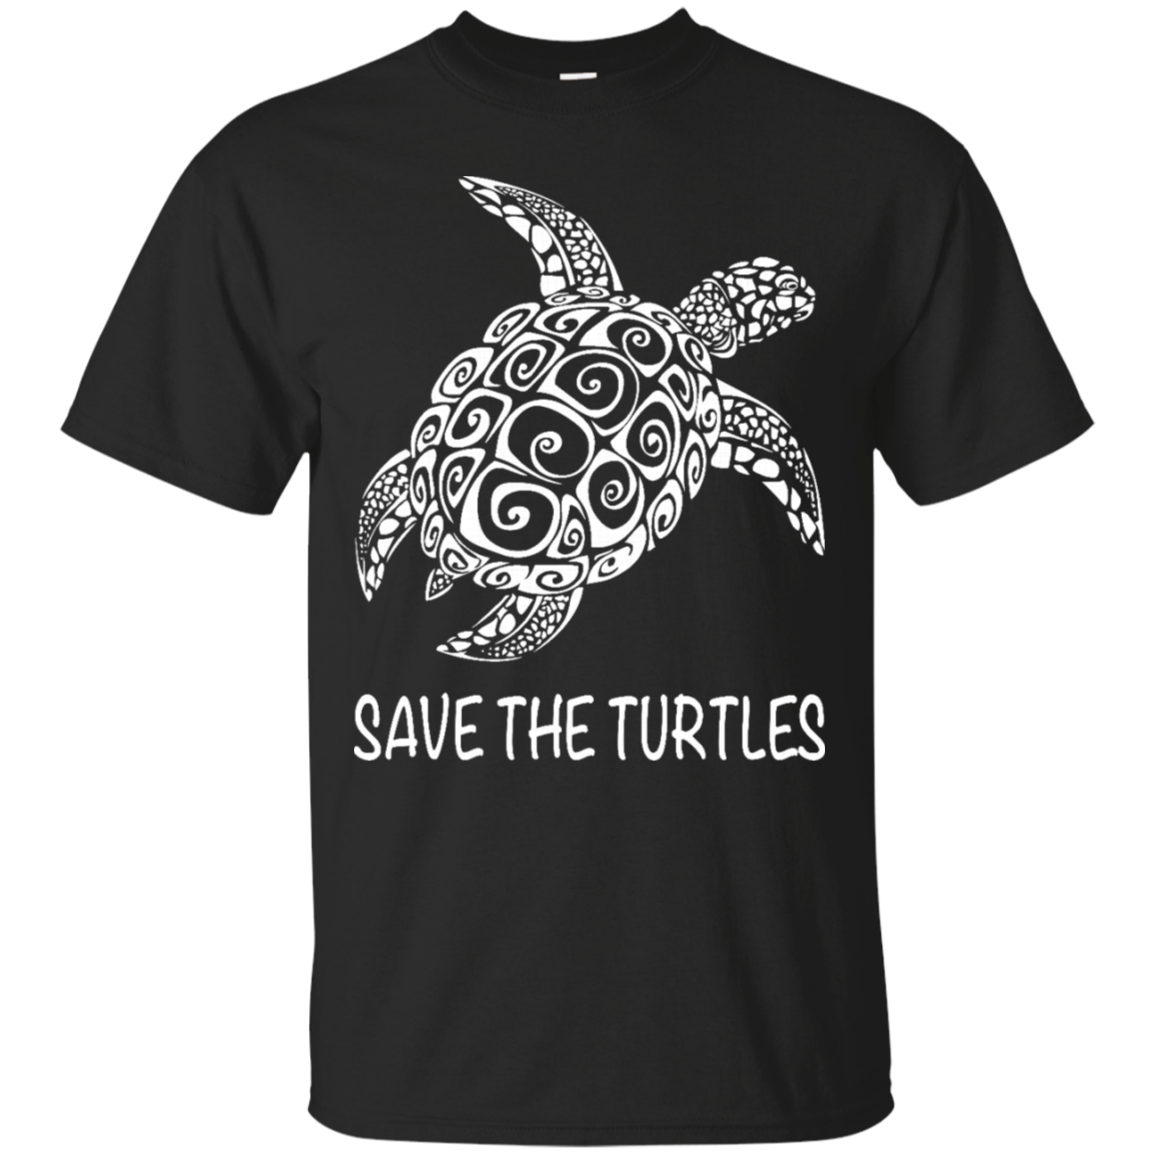 Sea Turtle Shirts Save The Turtles - Teesmiley